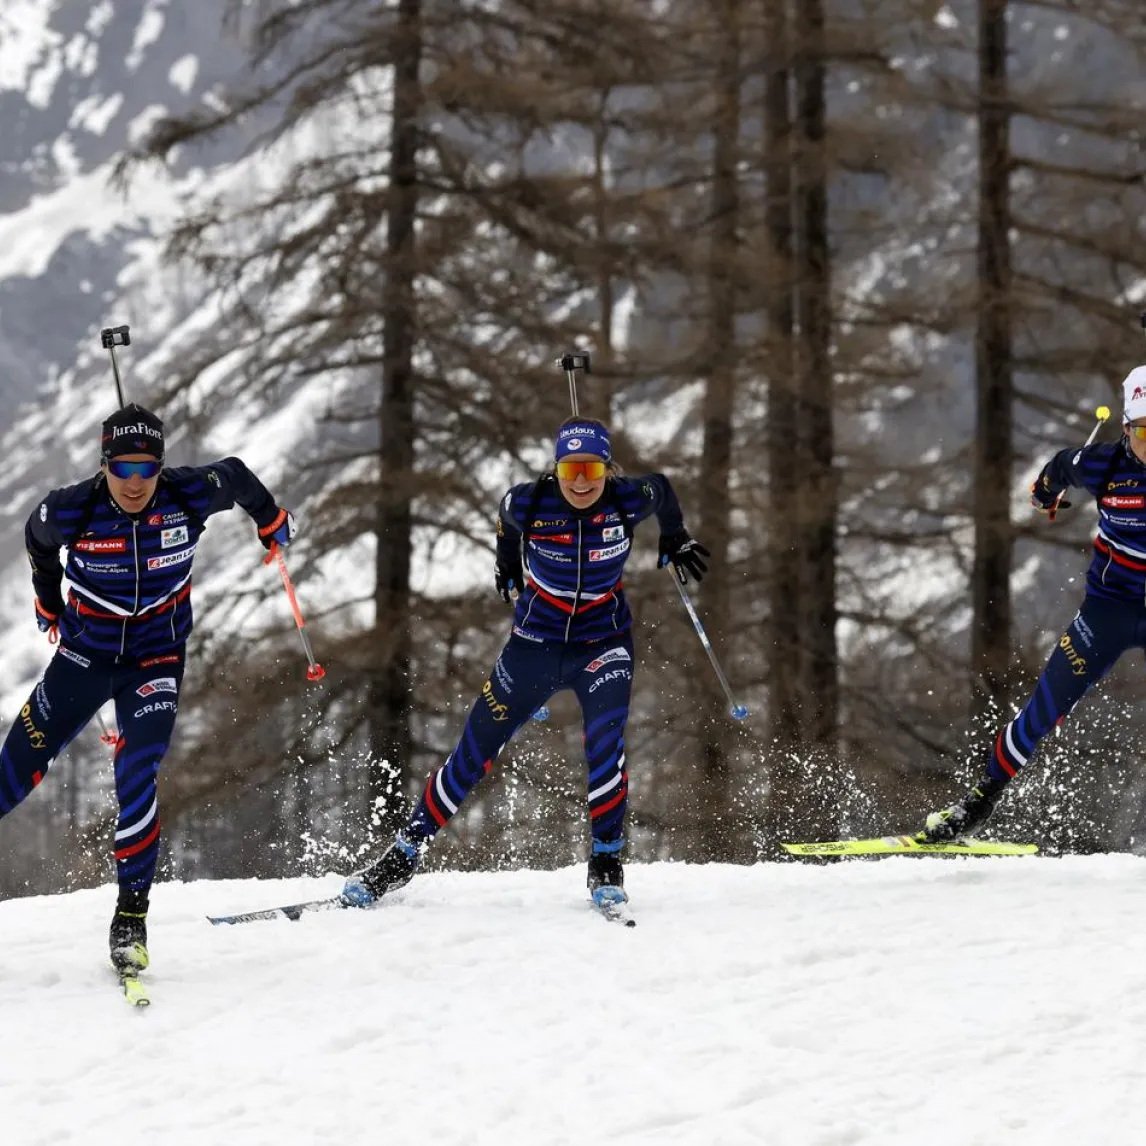 biathlon 3 skieurs face